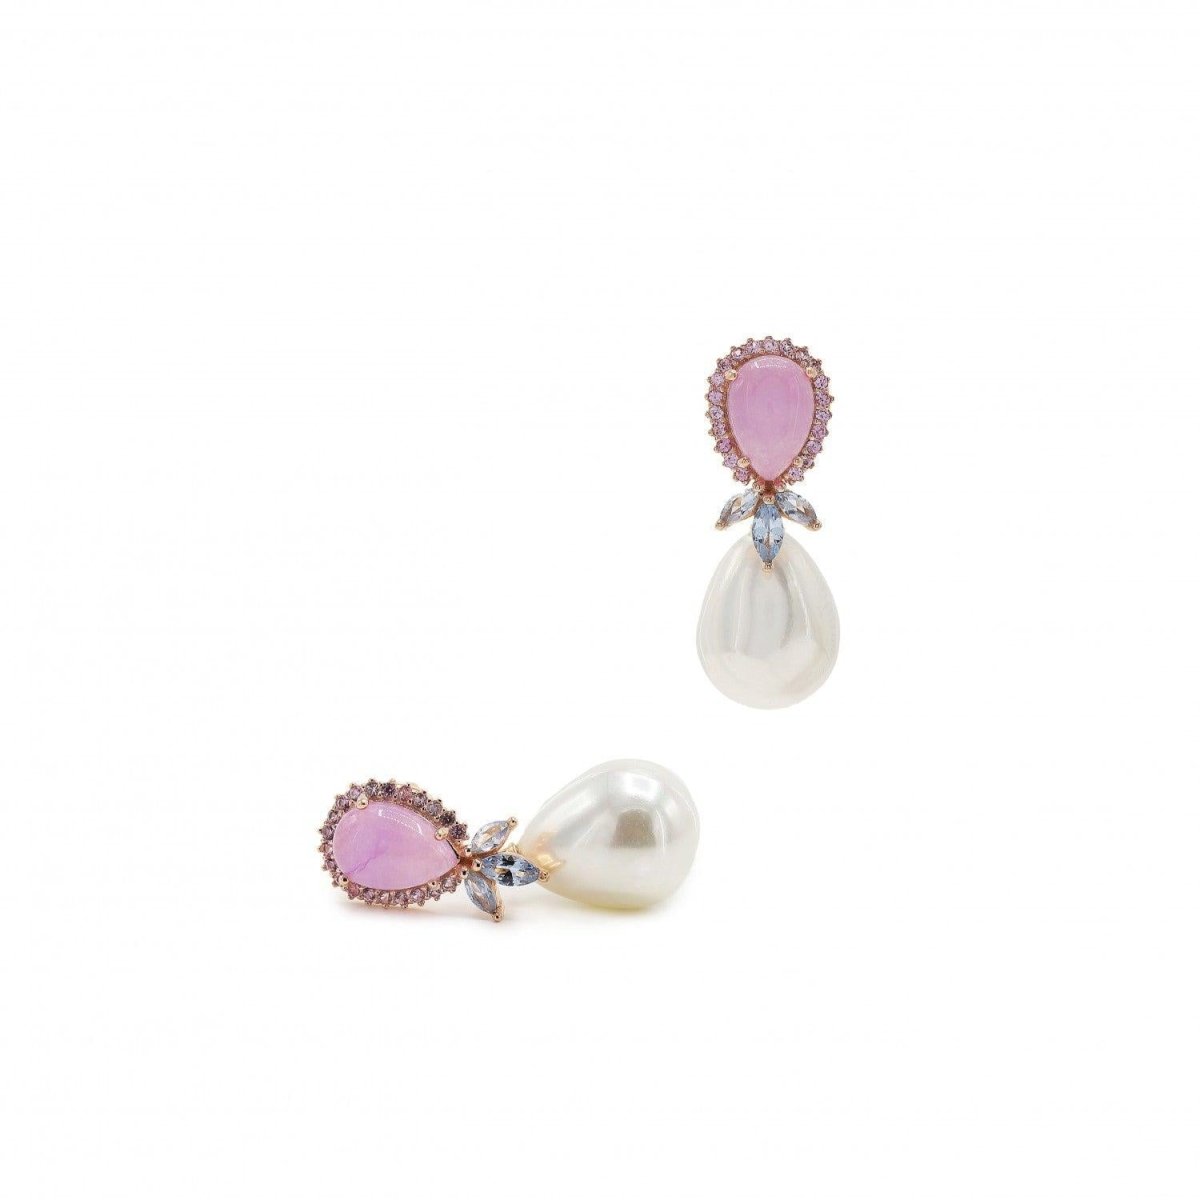 Pendiente · Pendientes perla colgante diseño gota rosa y pétalos lila